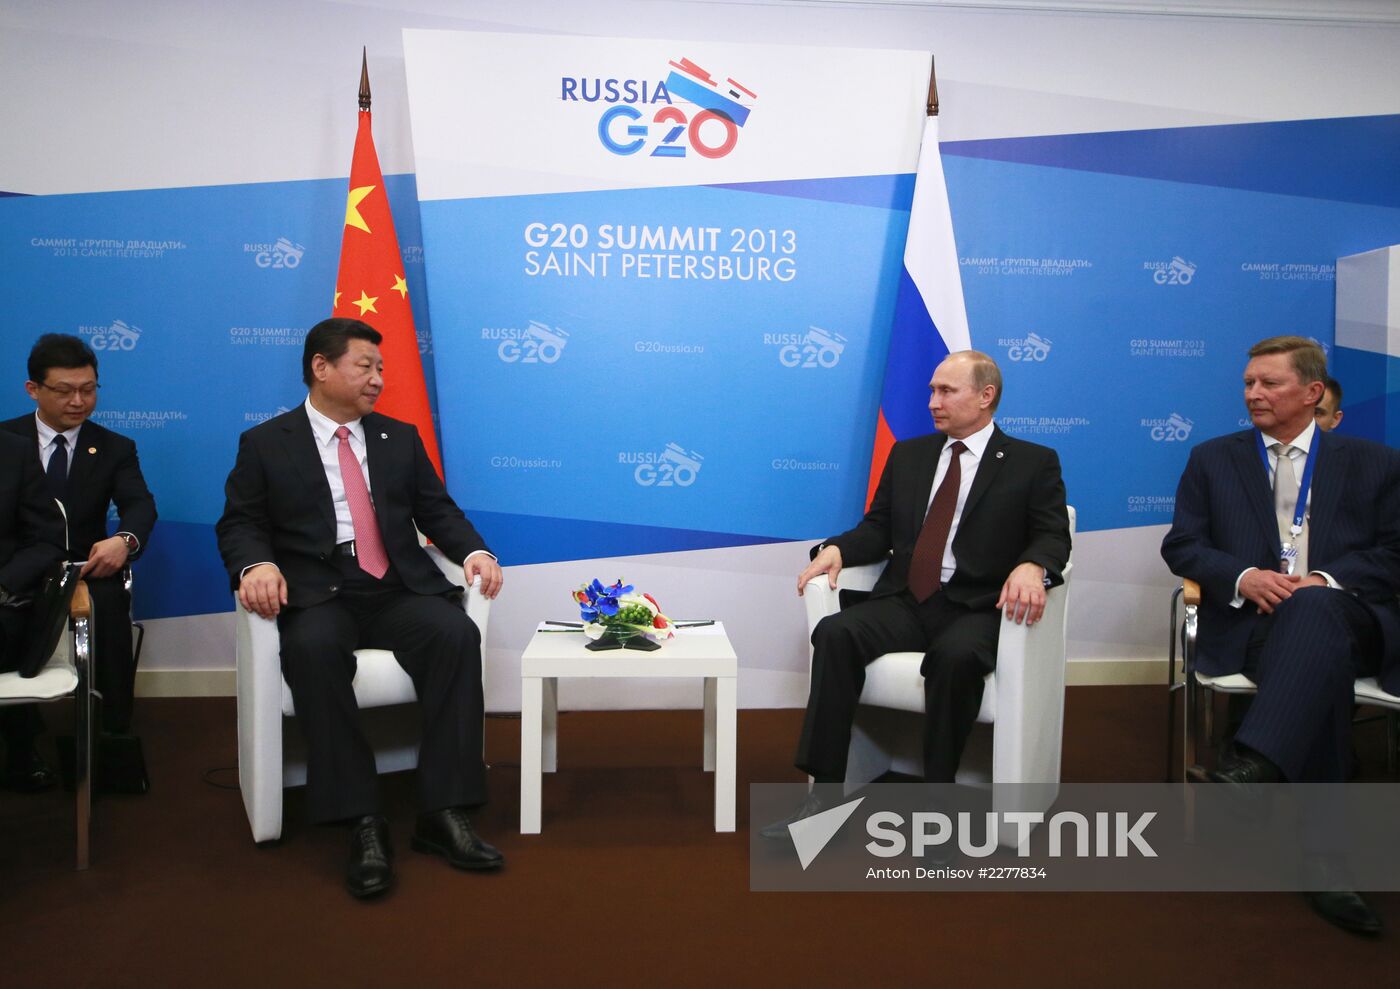 Bilateral meeting between Vladimir Putin and Xi Jinping